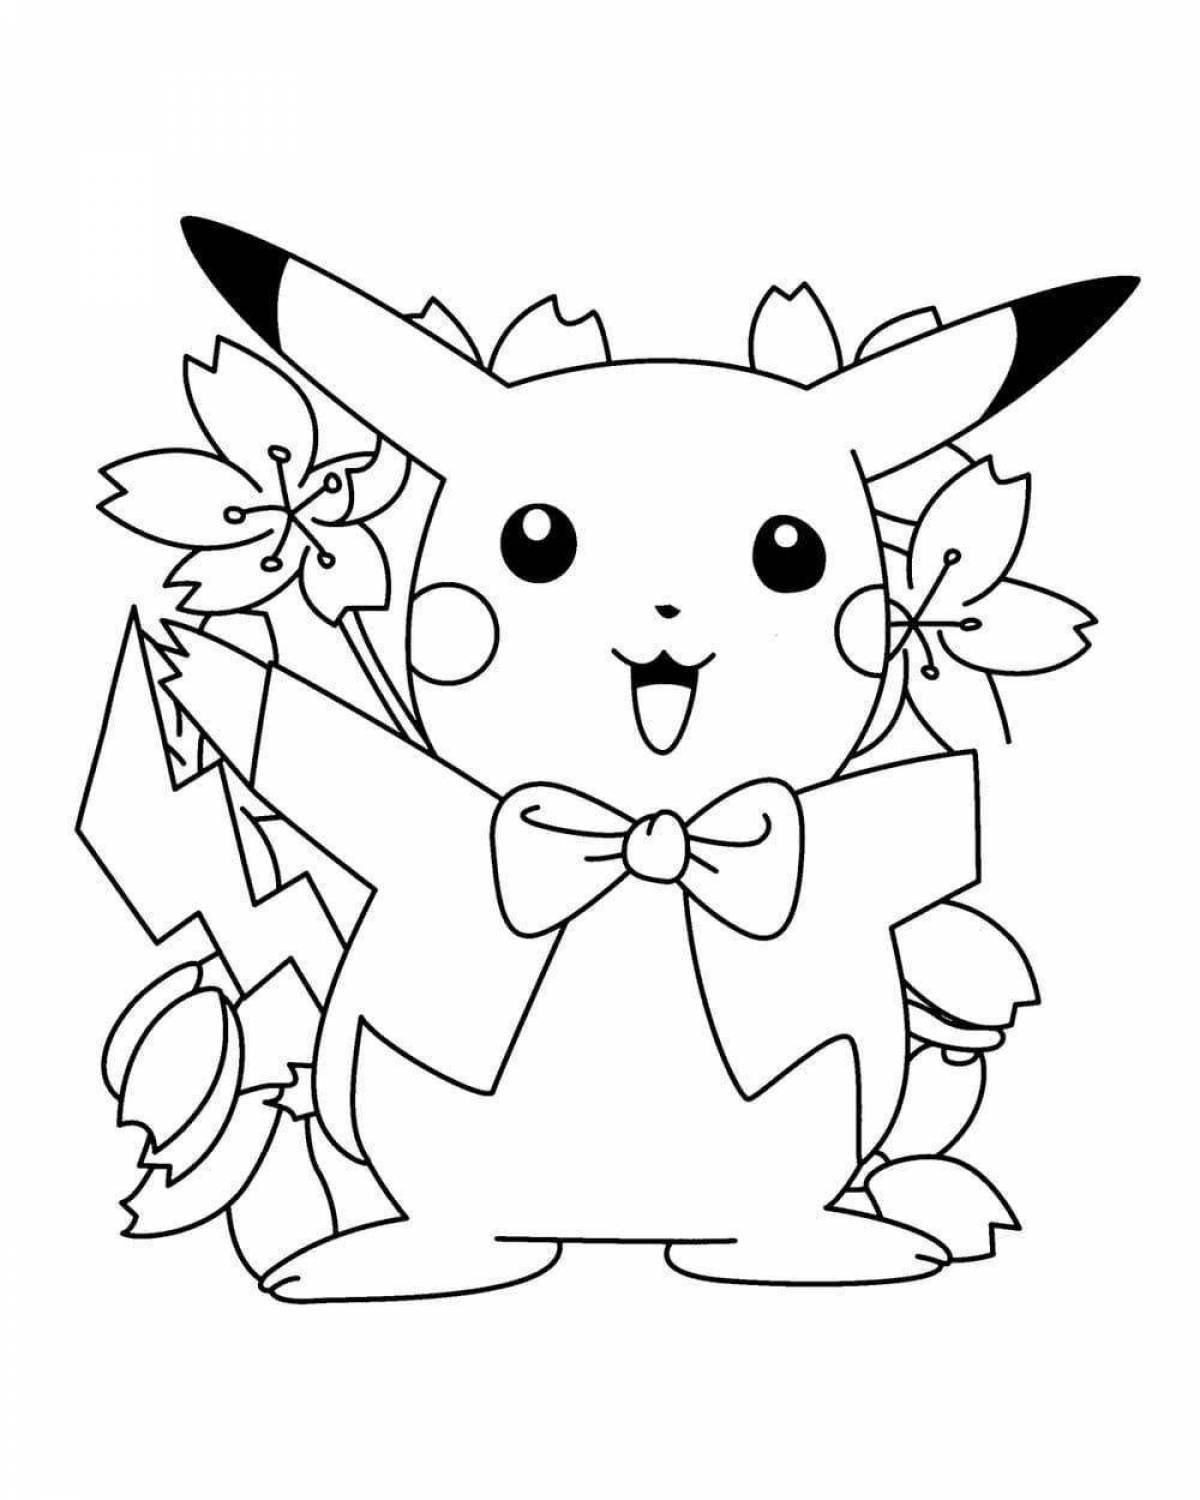 Fun coloring Pikachu for girls